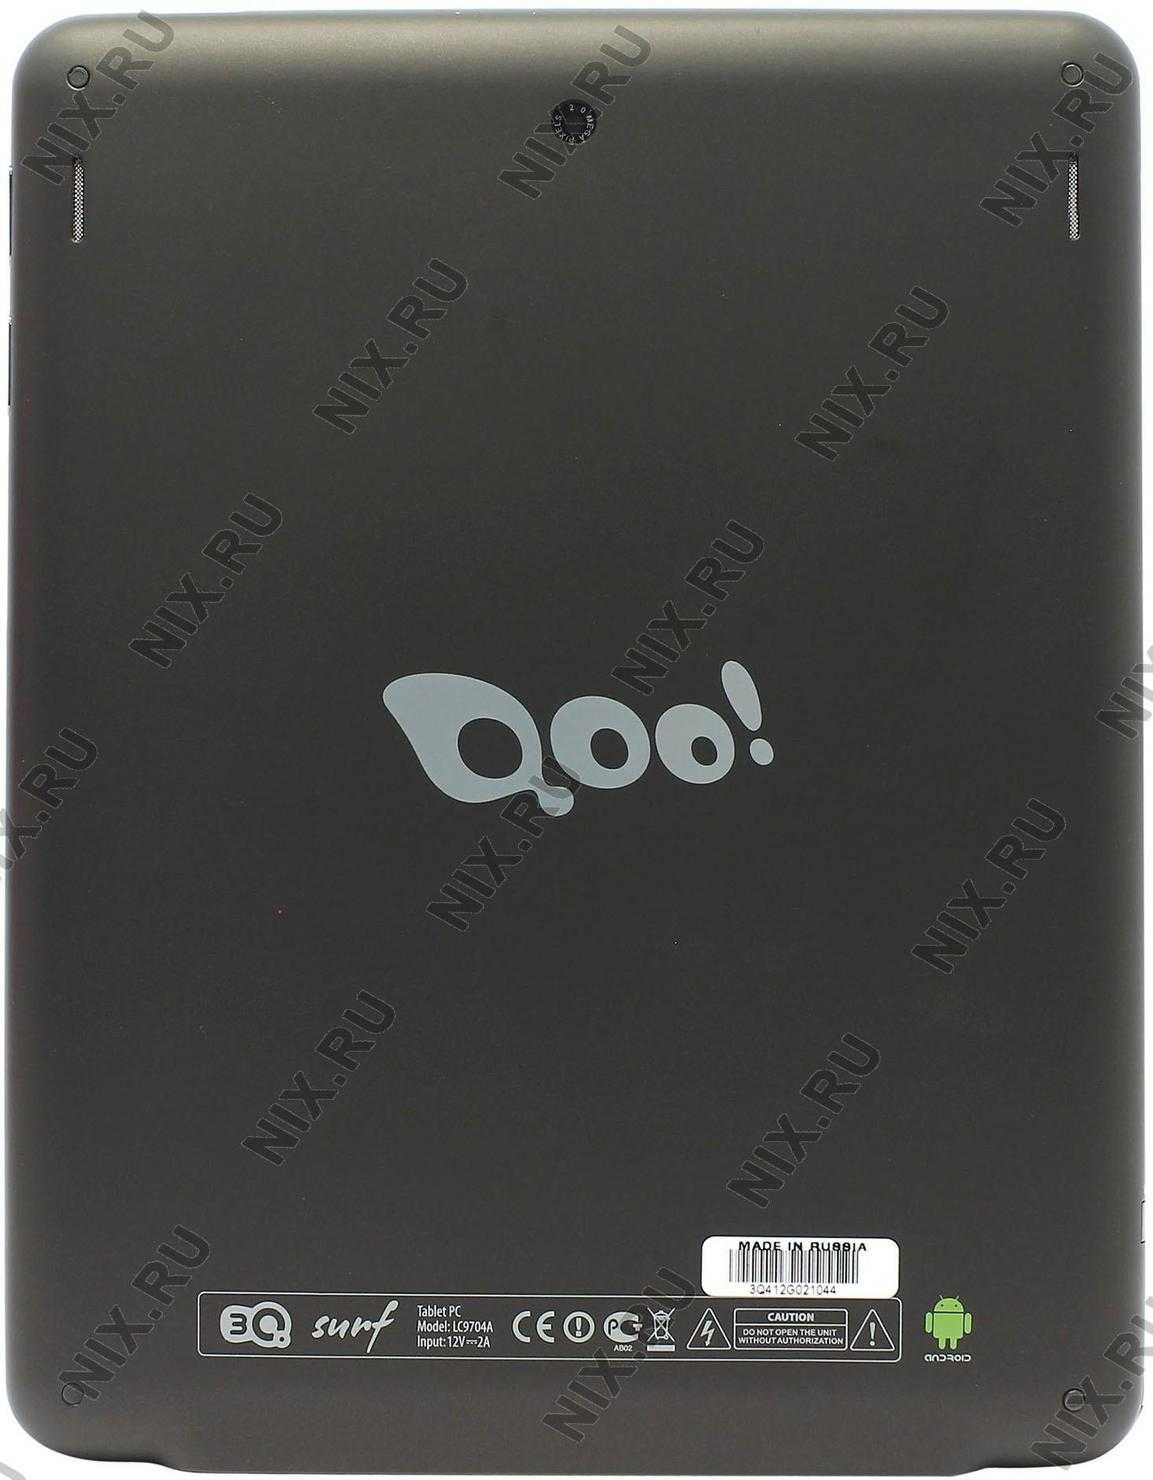 Планшет 3q surf ts9708b 16 гб wifi 3g черный — купить, цена и характеристики, отзывы